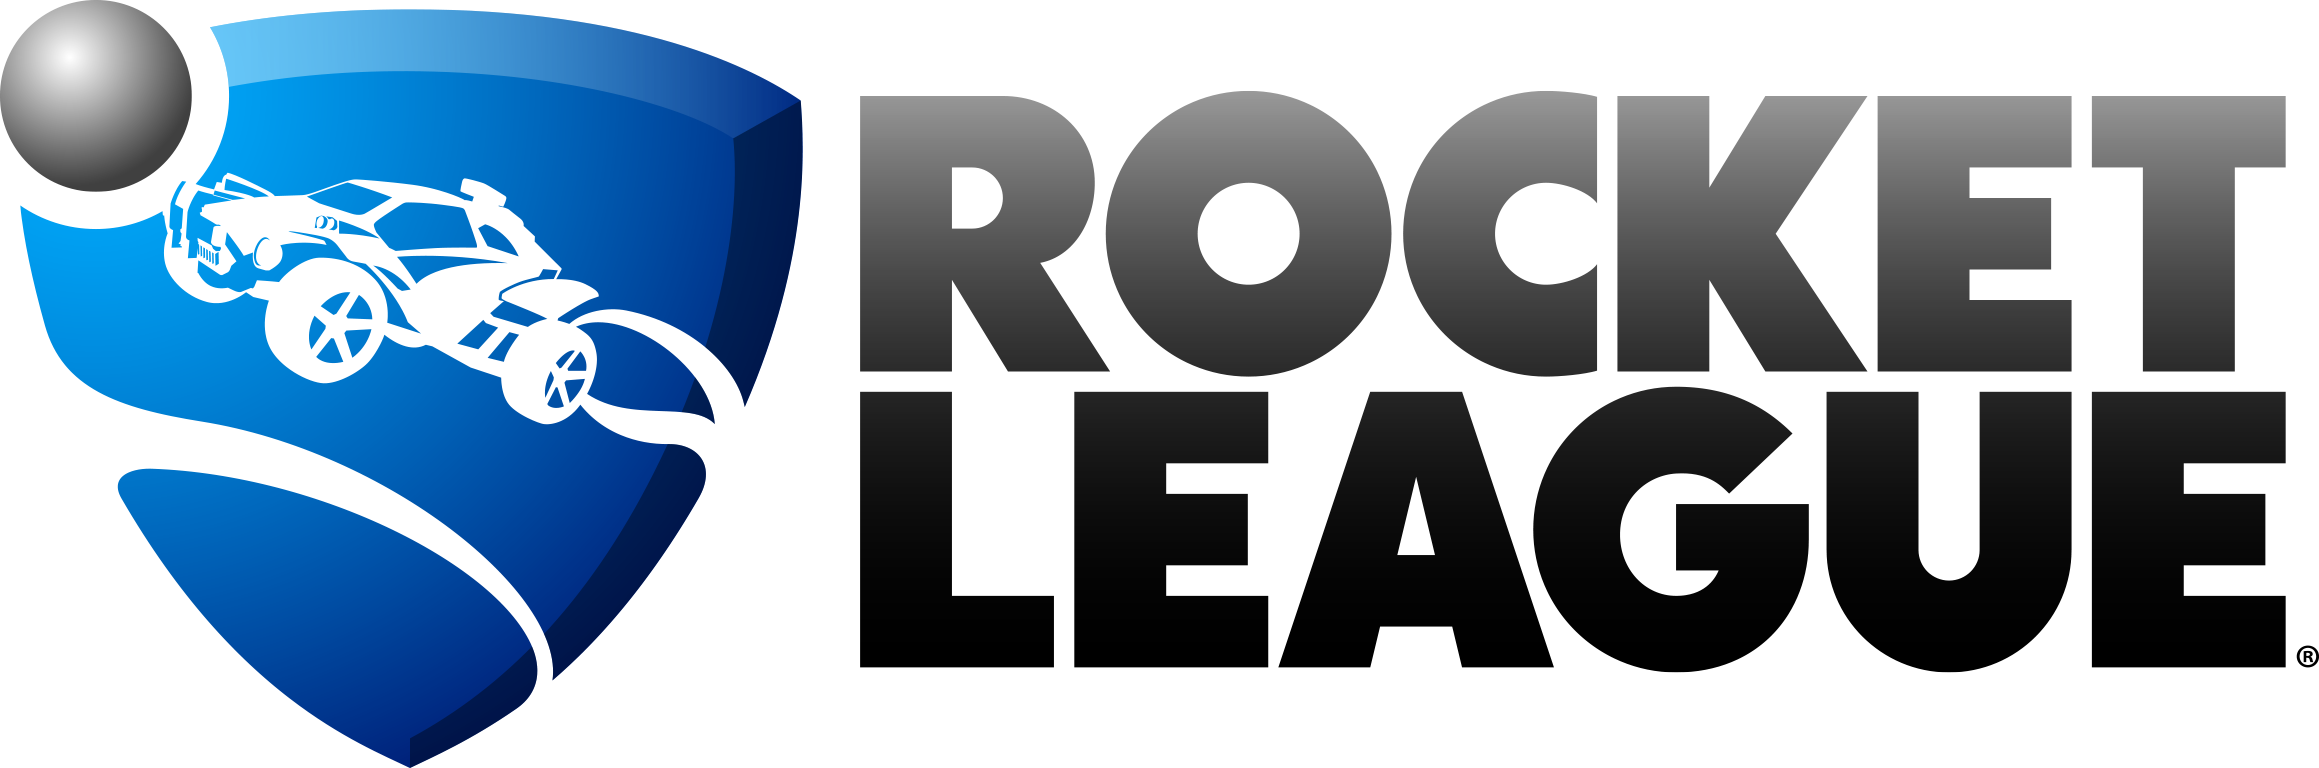 Image result for rocket league logo